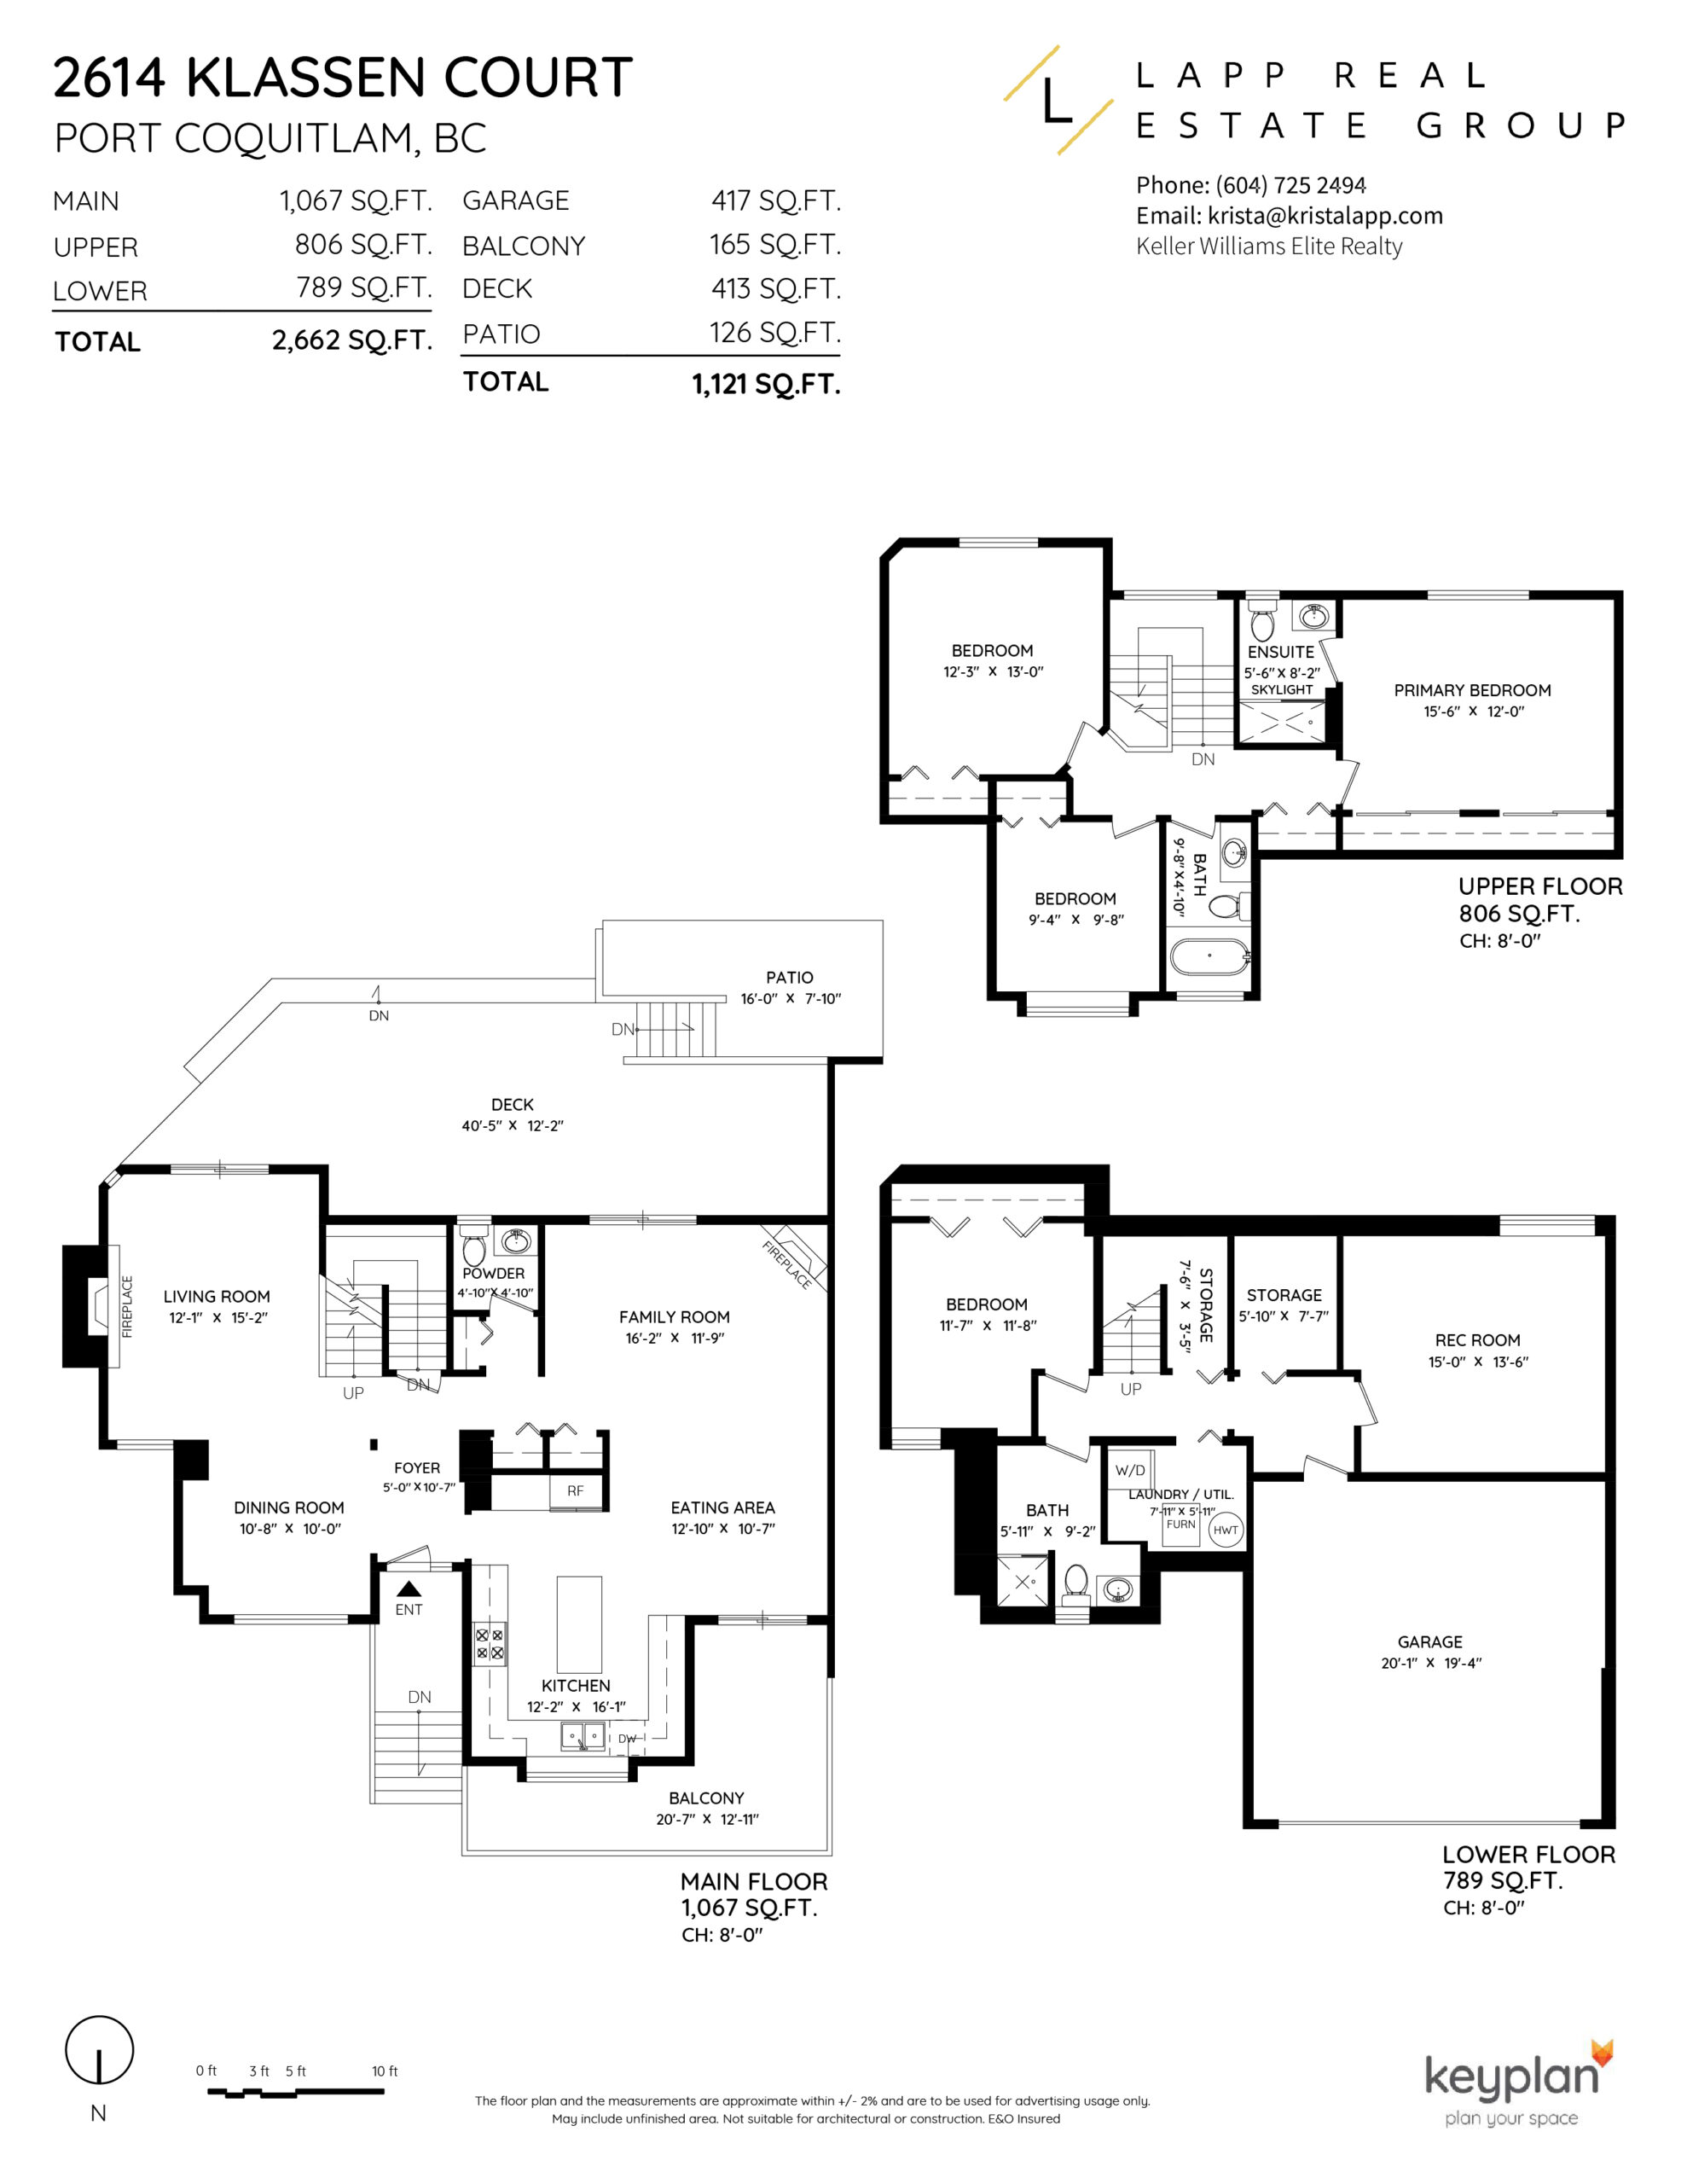 Krista Lapp 2614 Klassen Ct Port Coquitlam Duplex-Layout Floor Plan